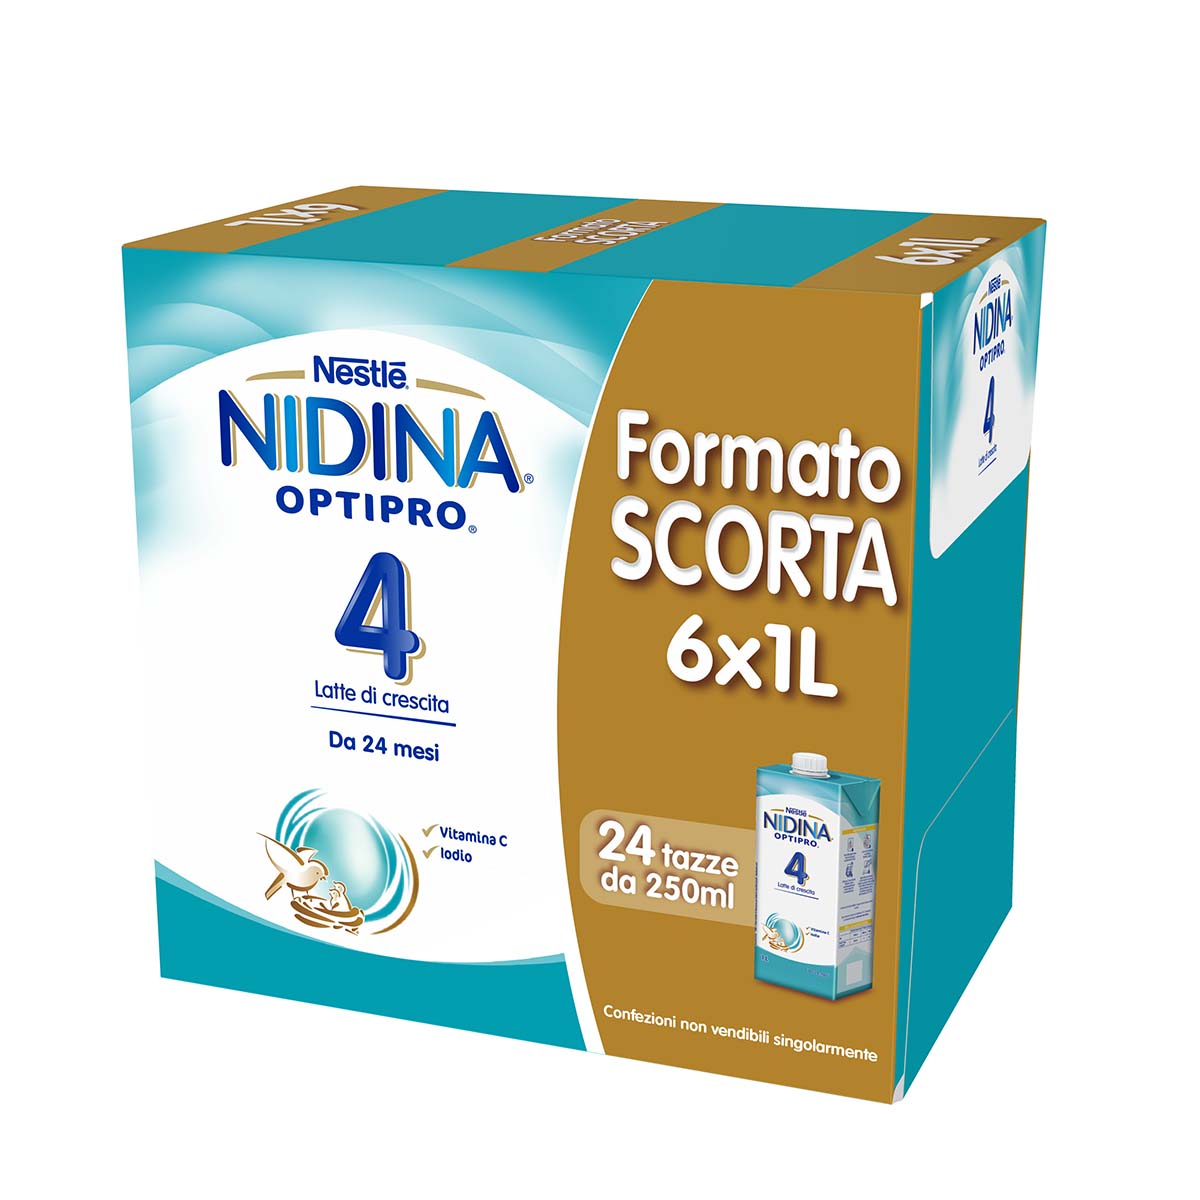 Nestlé NIDINA OPTIPRO 4 6x1L, Latte di crescita liquido, dai 24 mesi